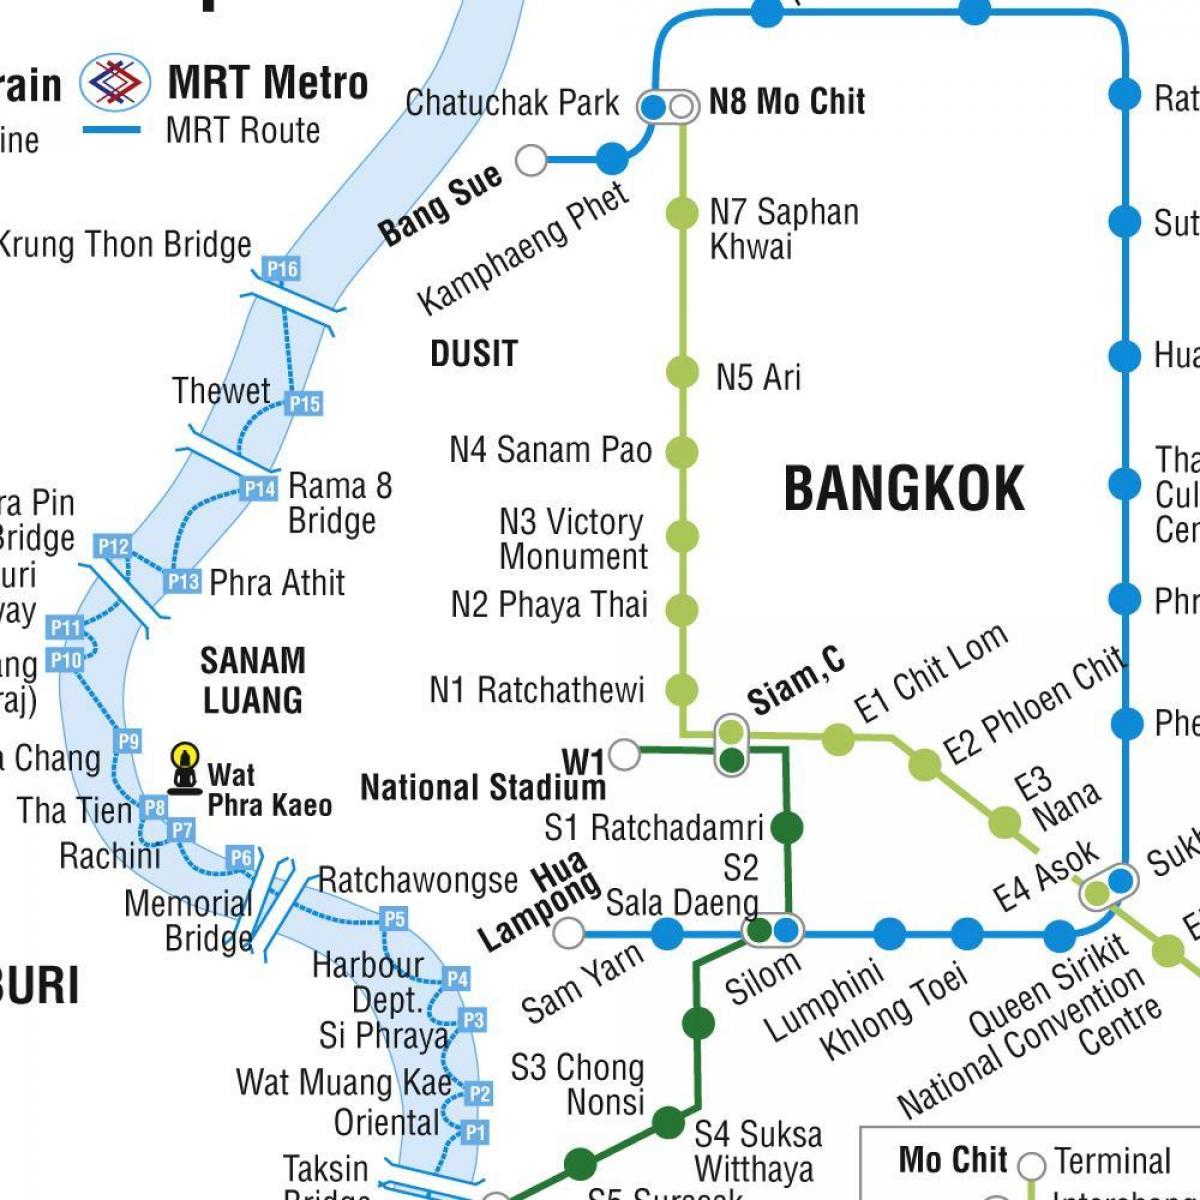 peta bangkok metro dan skytrain